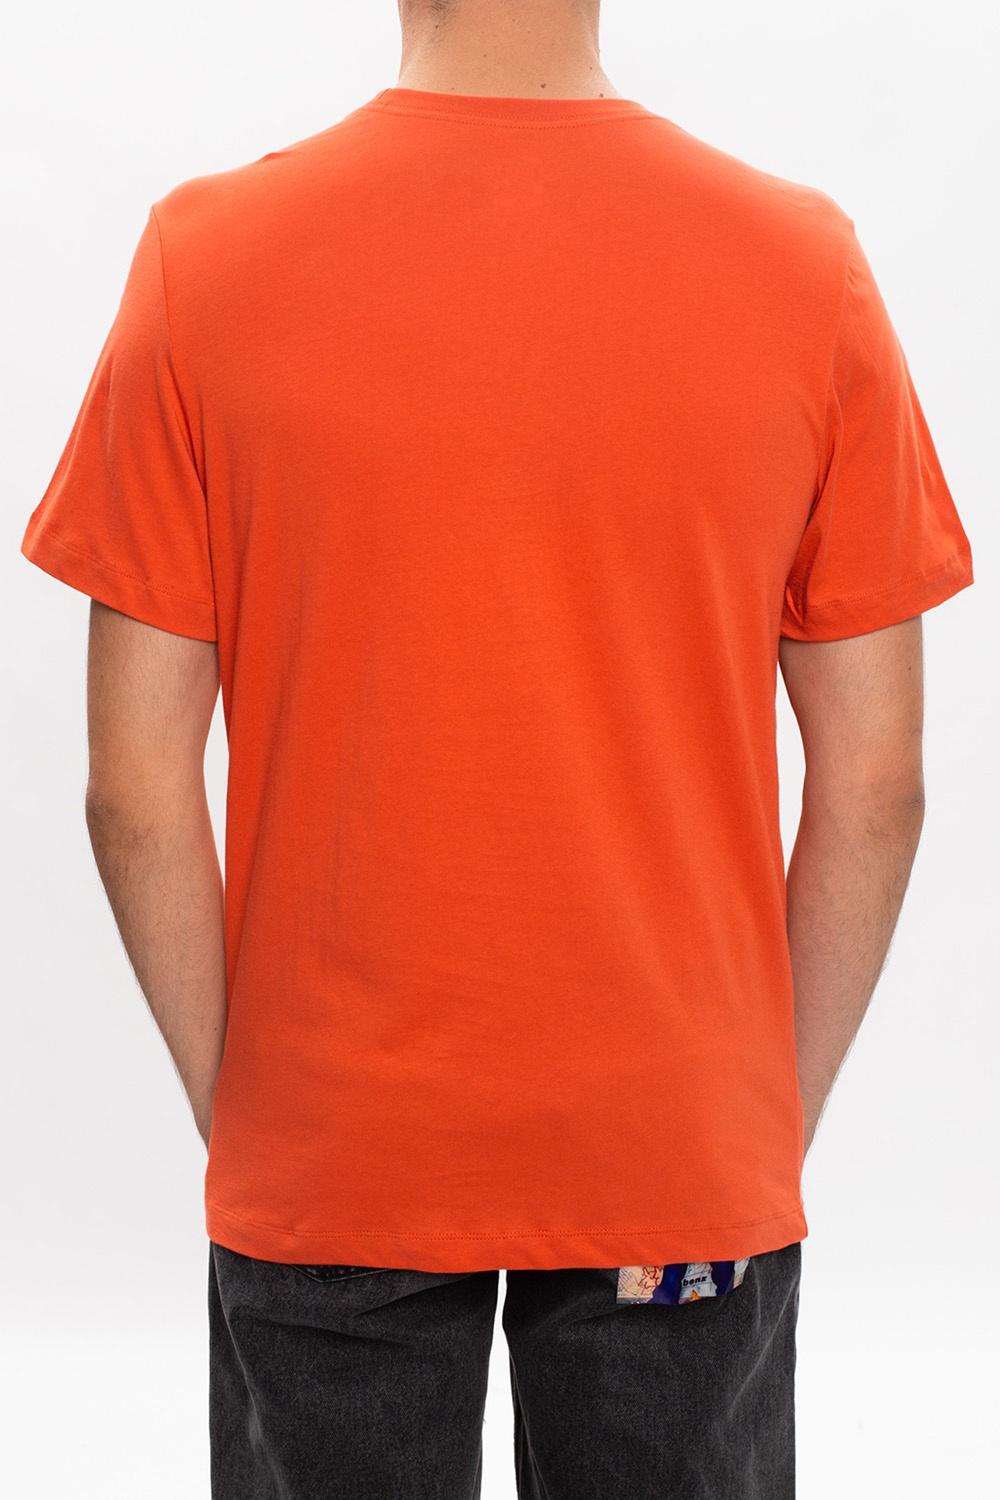 Nike Sportswear Summer Futura T-shirt in Orange for Men | Lyst